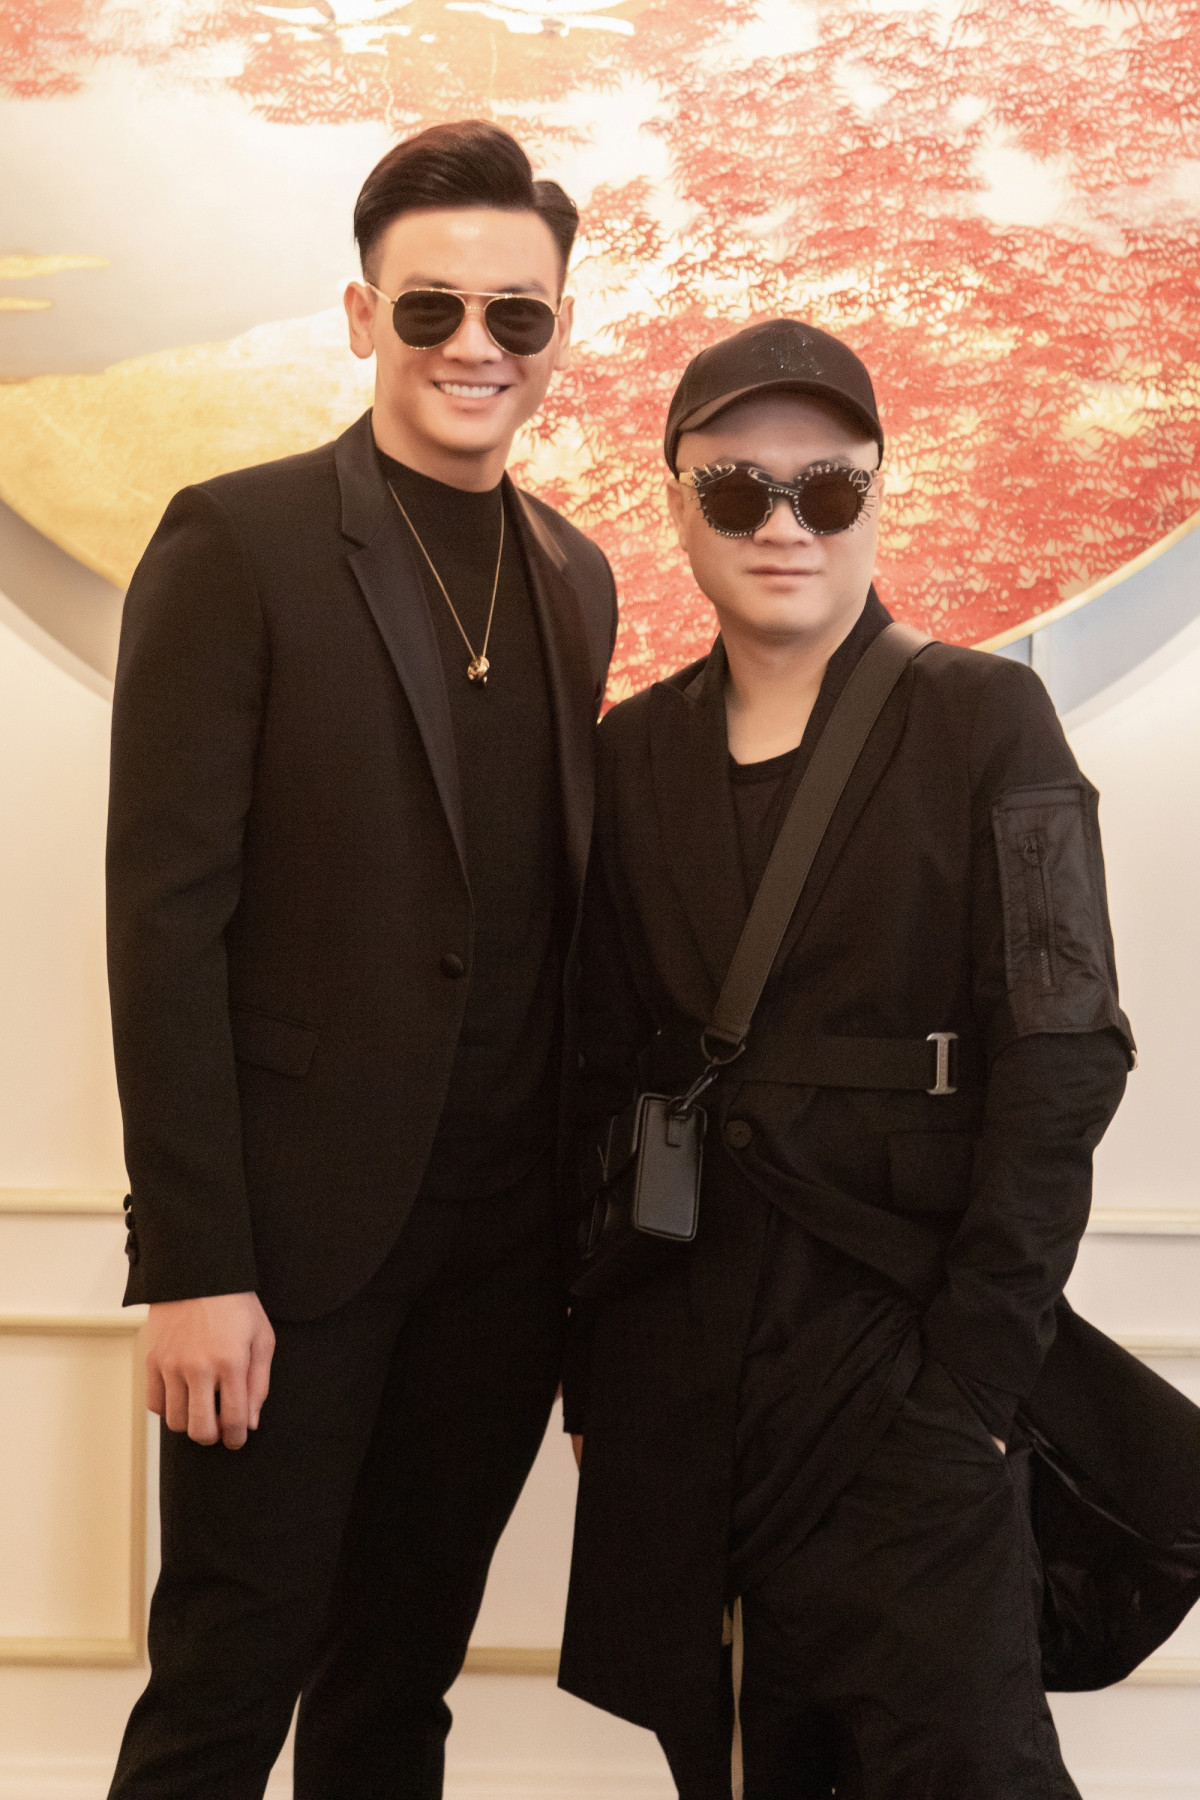 Đến chúc mừng sinh nhật NTK Đỗ Mạnh Cường, người mẫu Lê Xuân Tiền chọn trang phục đen đồng điệu.